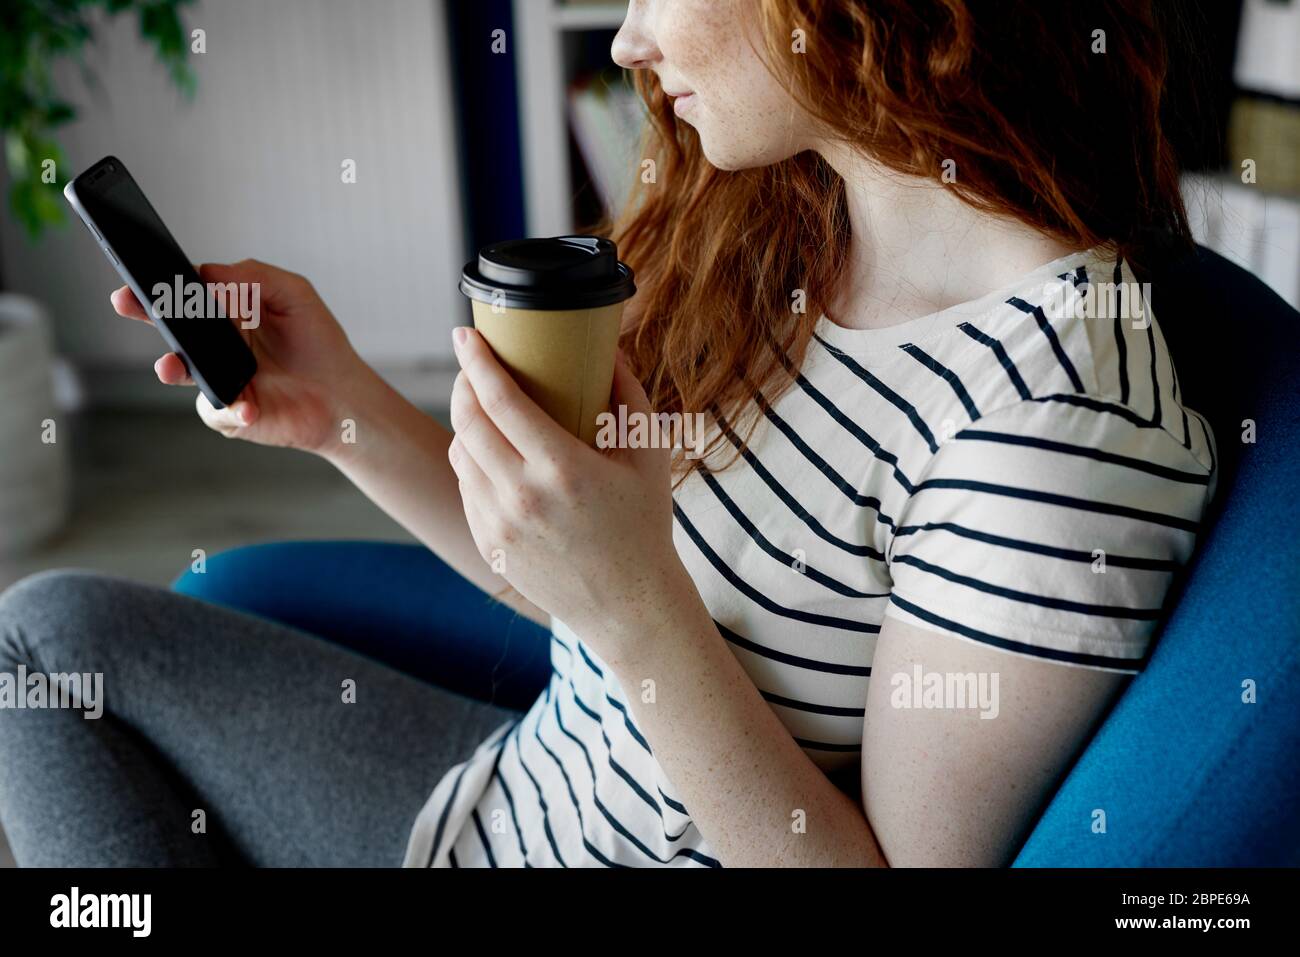 Mujer sentada con un teléfono y una taza de café Foto de stock